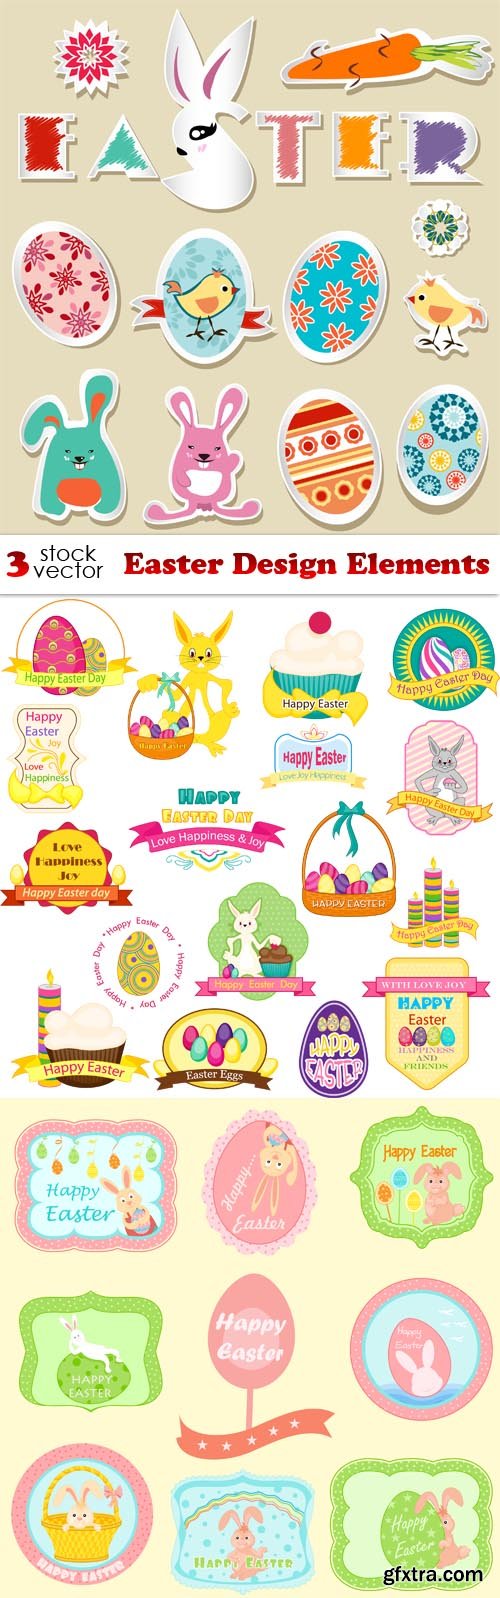 Vectors - Easter Design Elements